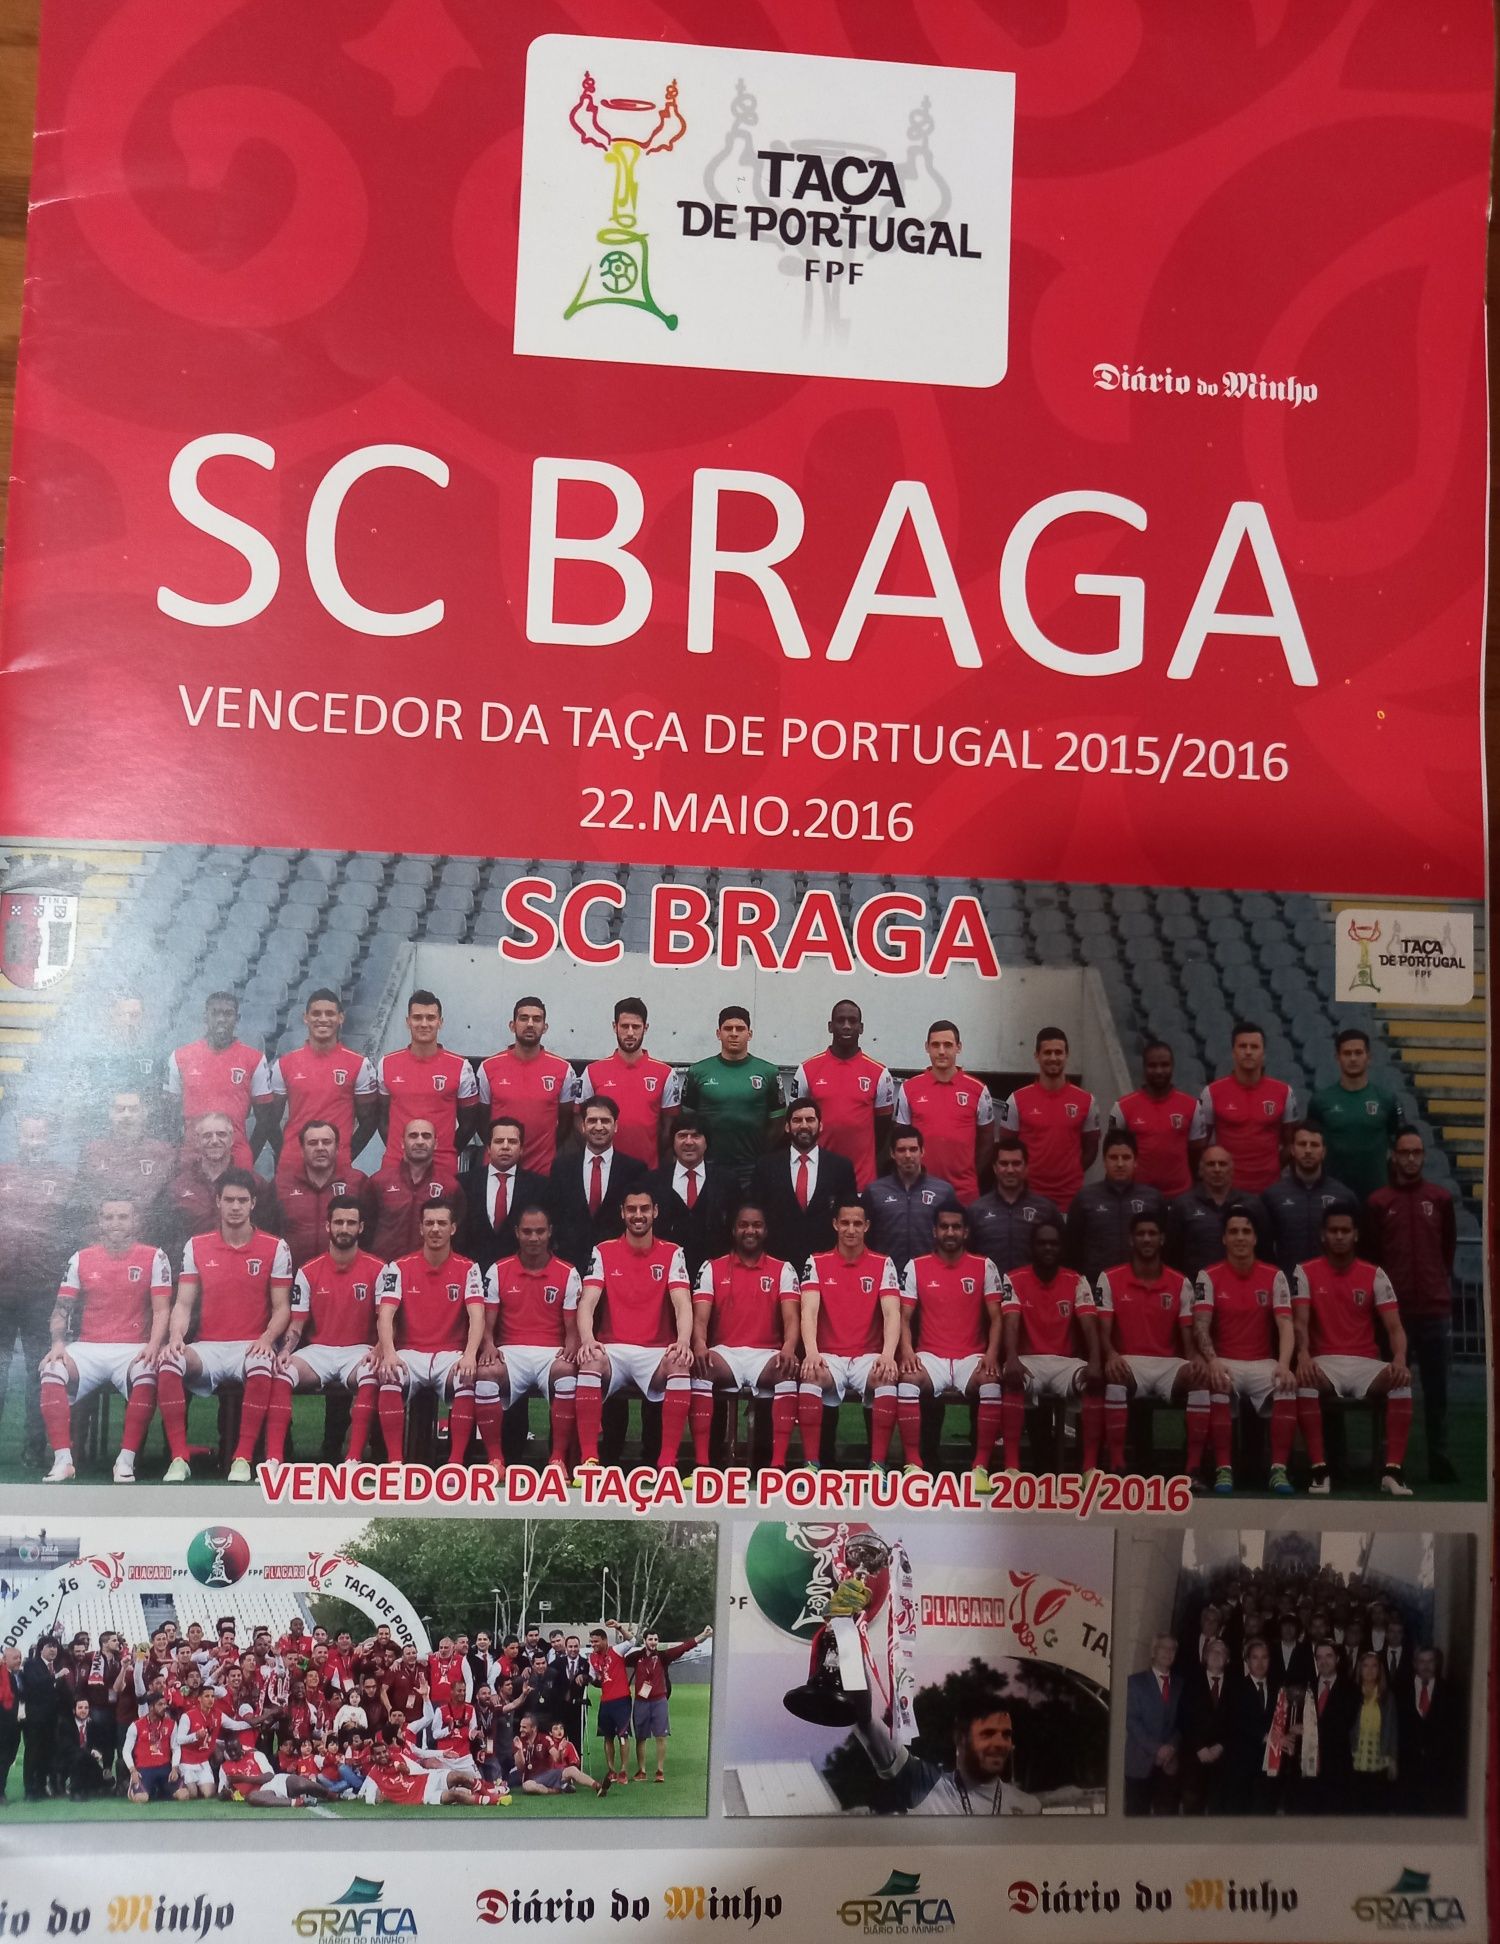 Taça de Portugal 2015/2016 S. C. de Braga o super poster